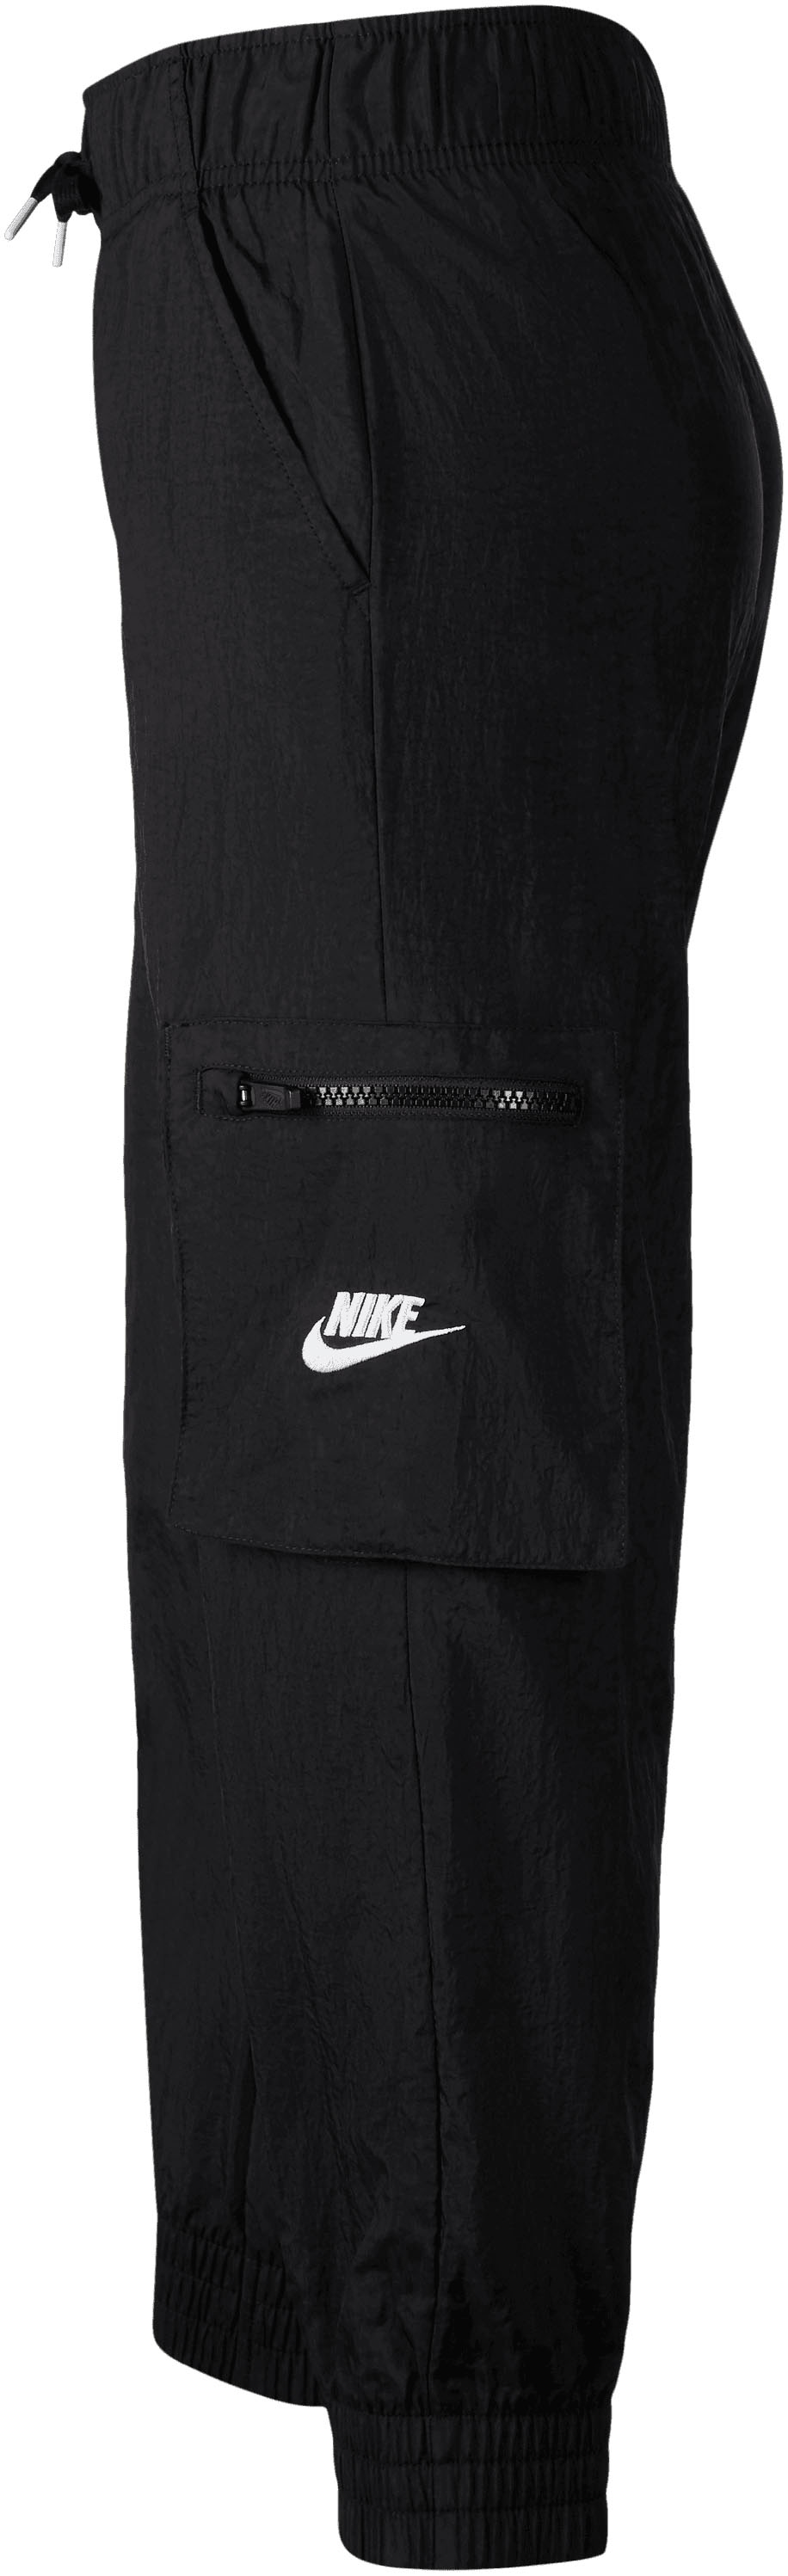 »Big Cargo bei (Girls\') Kids\' Sportswear Sporthose Pants« Woven Nike